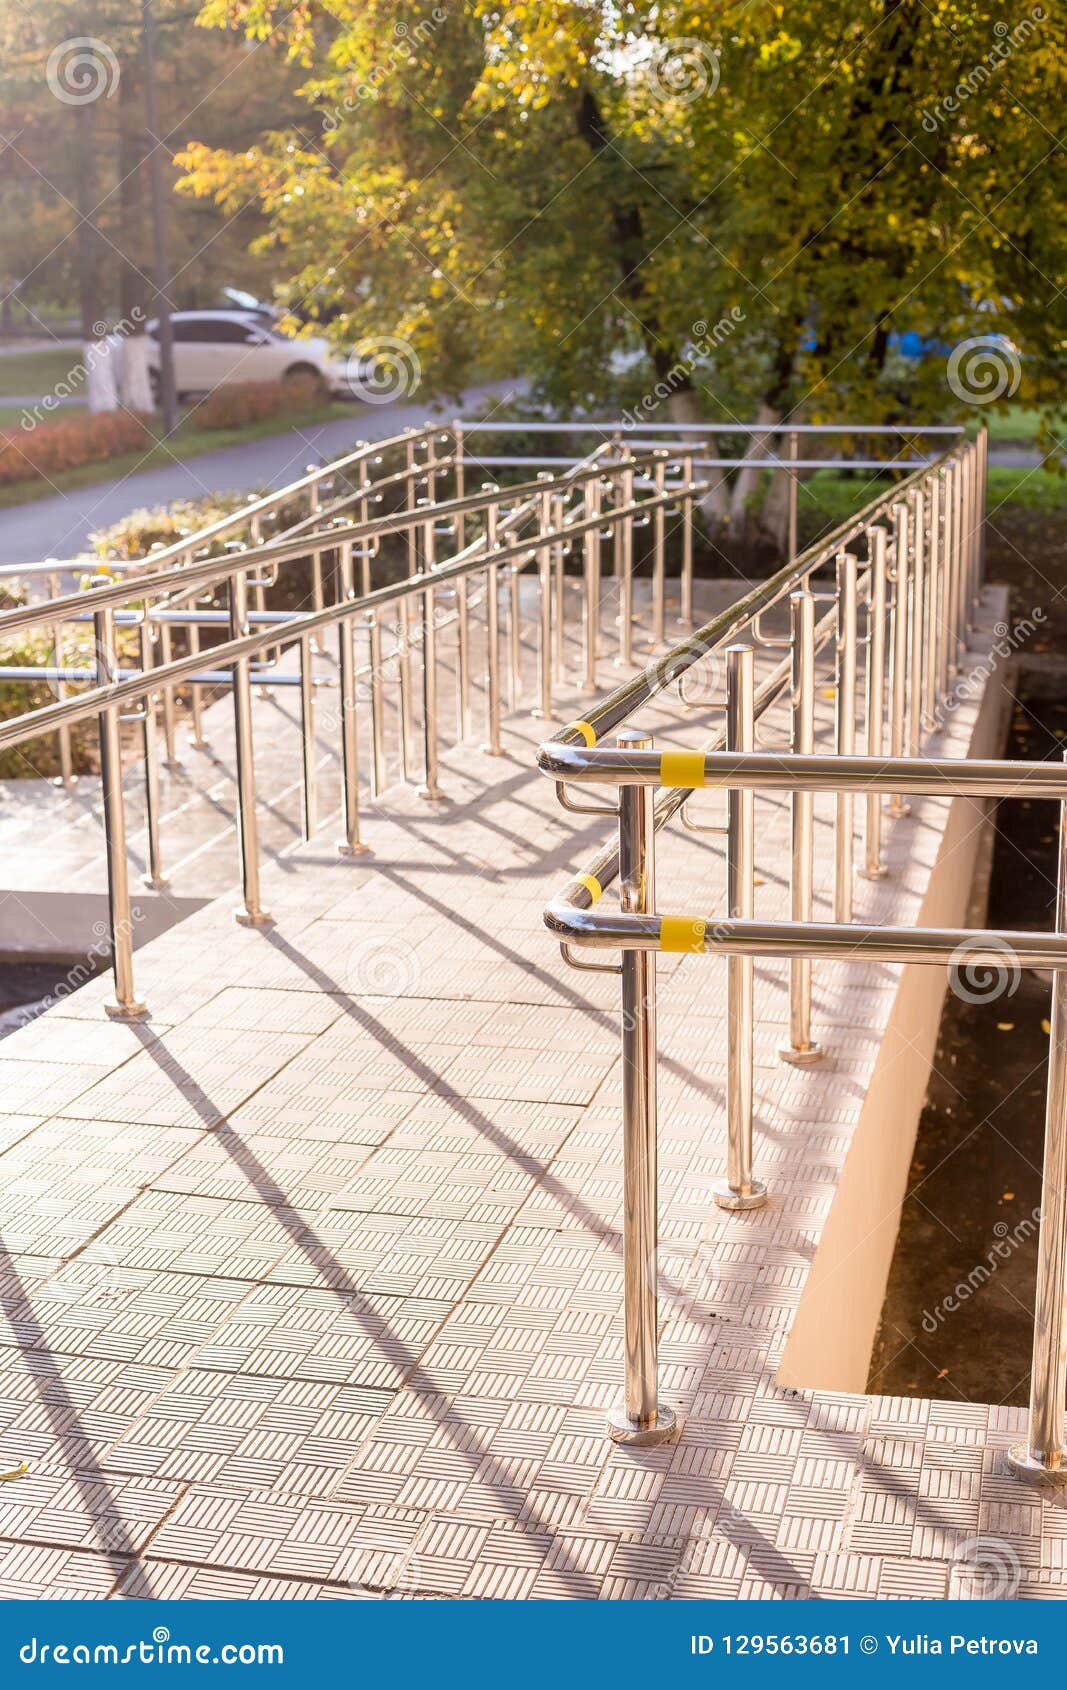 Rampenweise für Stützrollstuhl Concret-Rampenweise mit Edelstahlhandlauf für Stützrollstuhlbehinderter. Rampenweise für Stützrollstuhlbehinderter